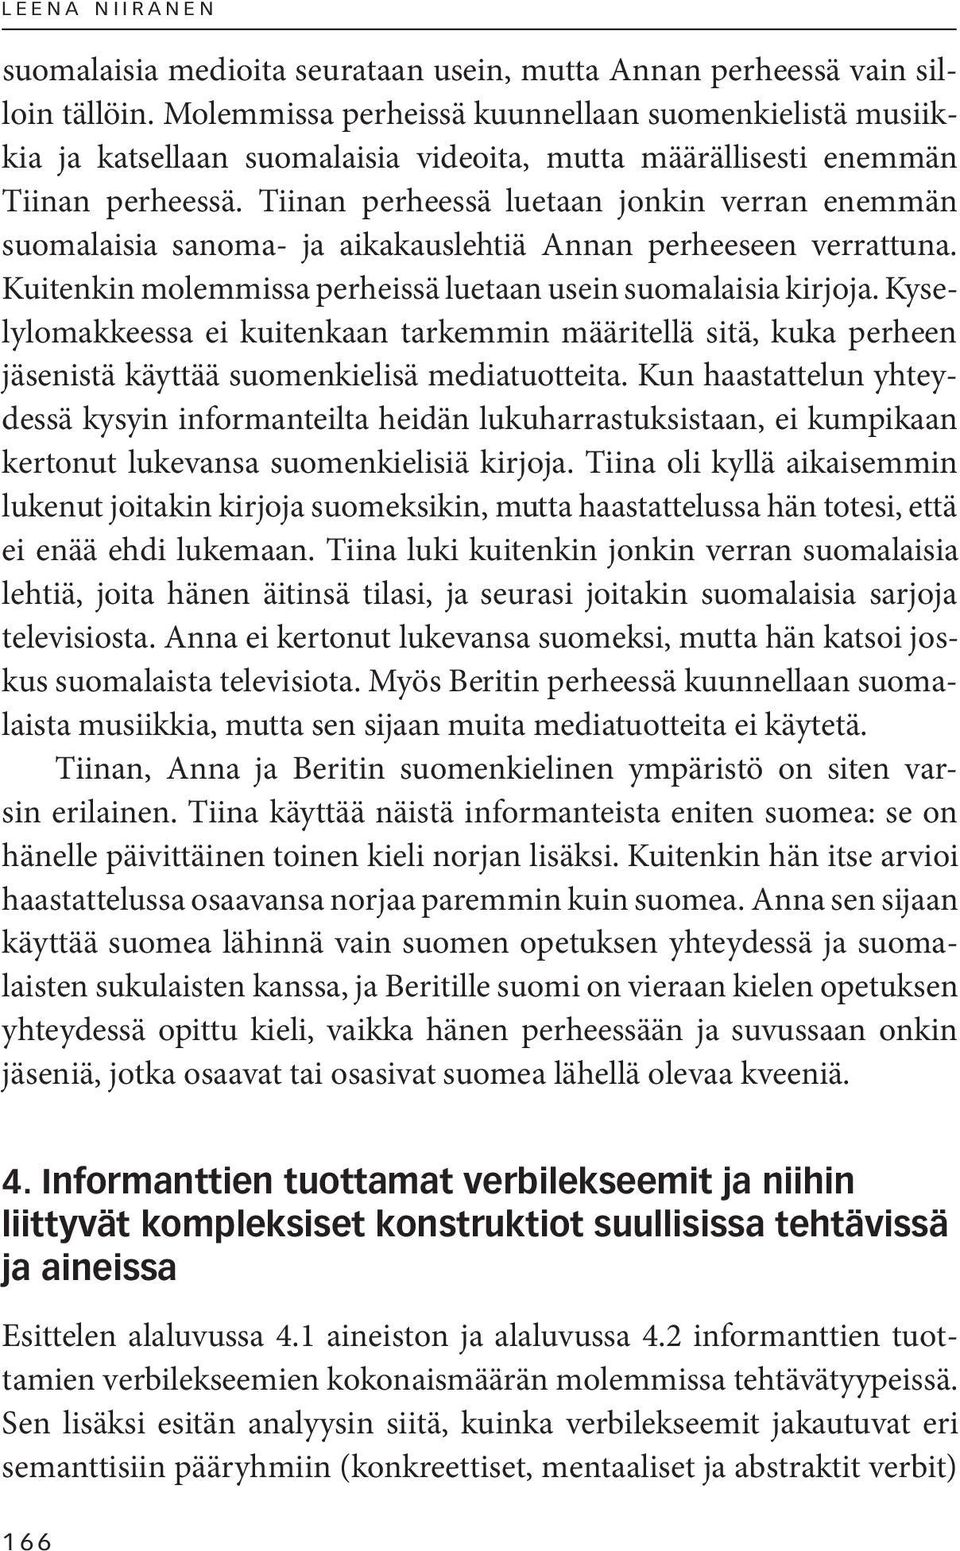 Tiinan perheessä luetaan jonkin verran enemmän suomalaisia sanoma- ja aikakauslehtiä Annan perheeseen verrattuna. Kuitenkin molemmissa perheissä luetaan usein suomalaisia kirjoja.